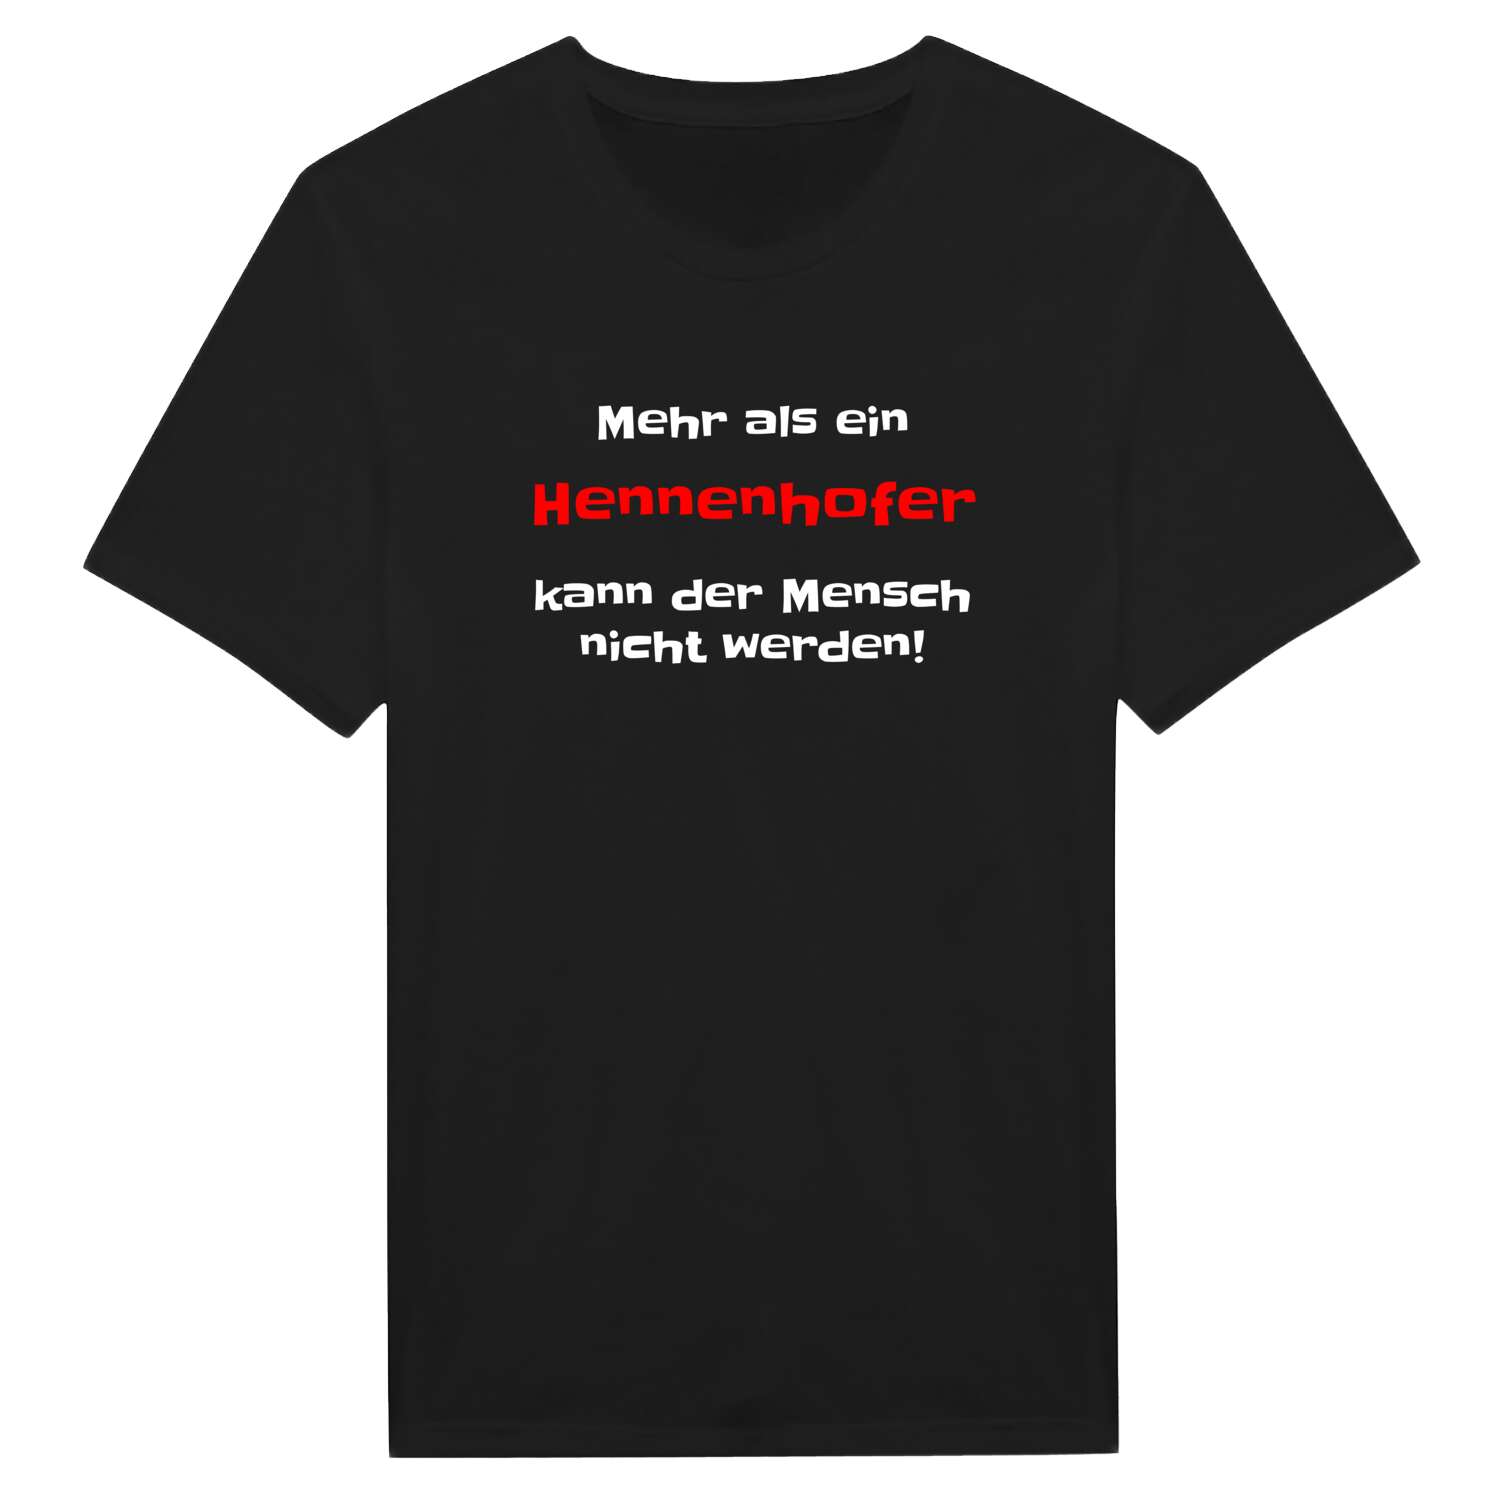 Hennenhof T-Shirt »Mehr als ein«